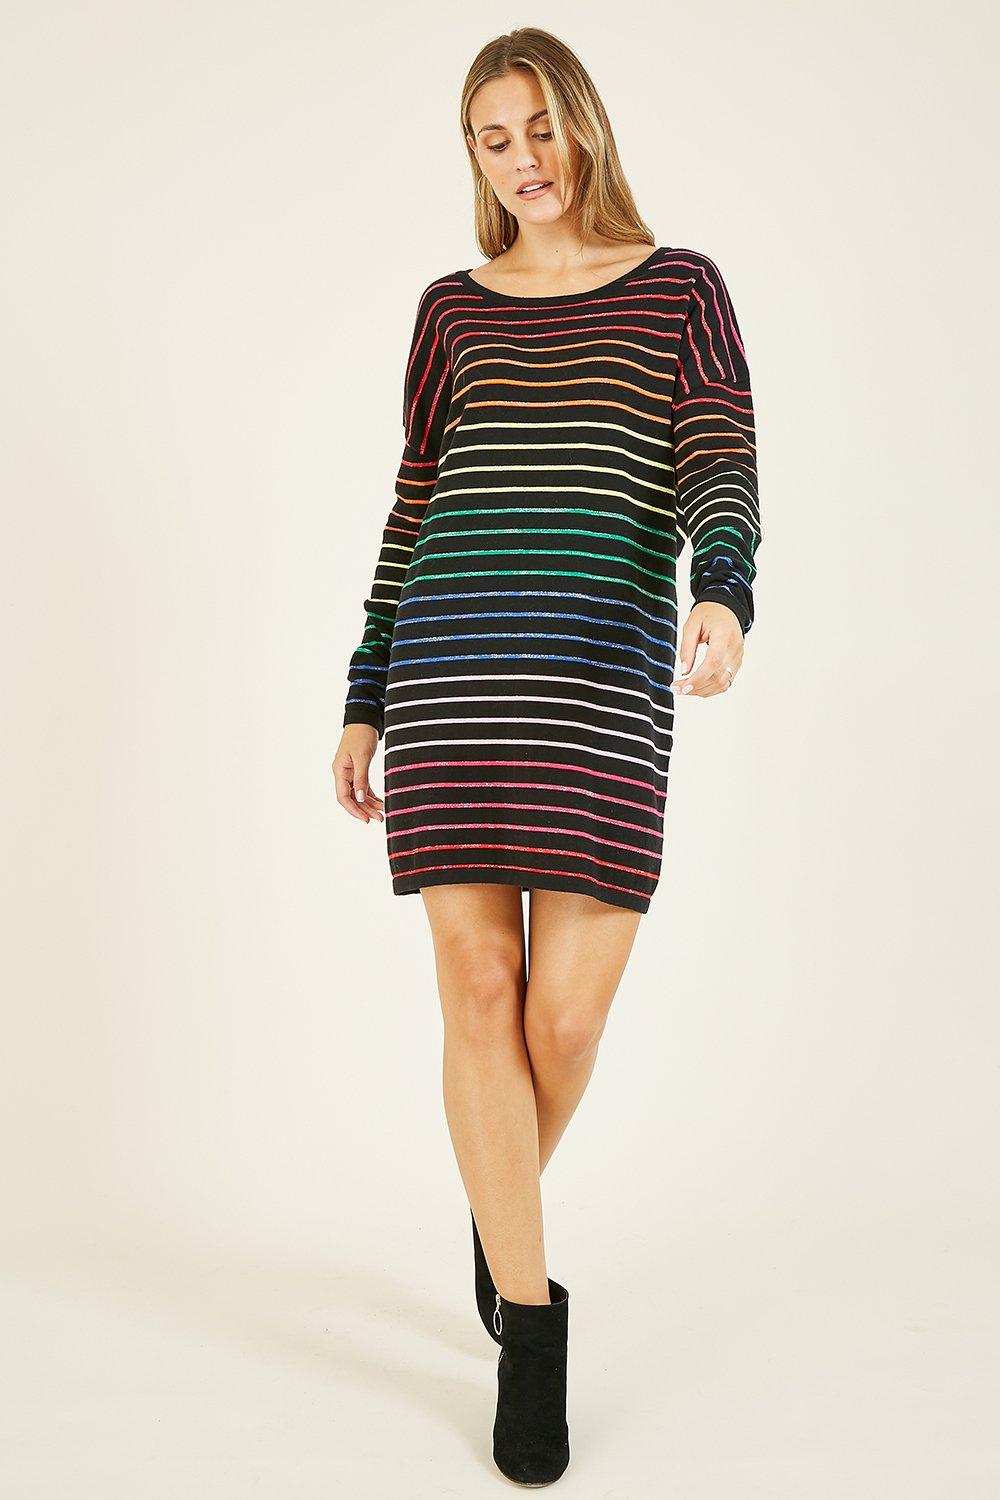 Dresses | Multi Coloured Lurex Stripe Knitted 'Trudi' Tunic | Yumi